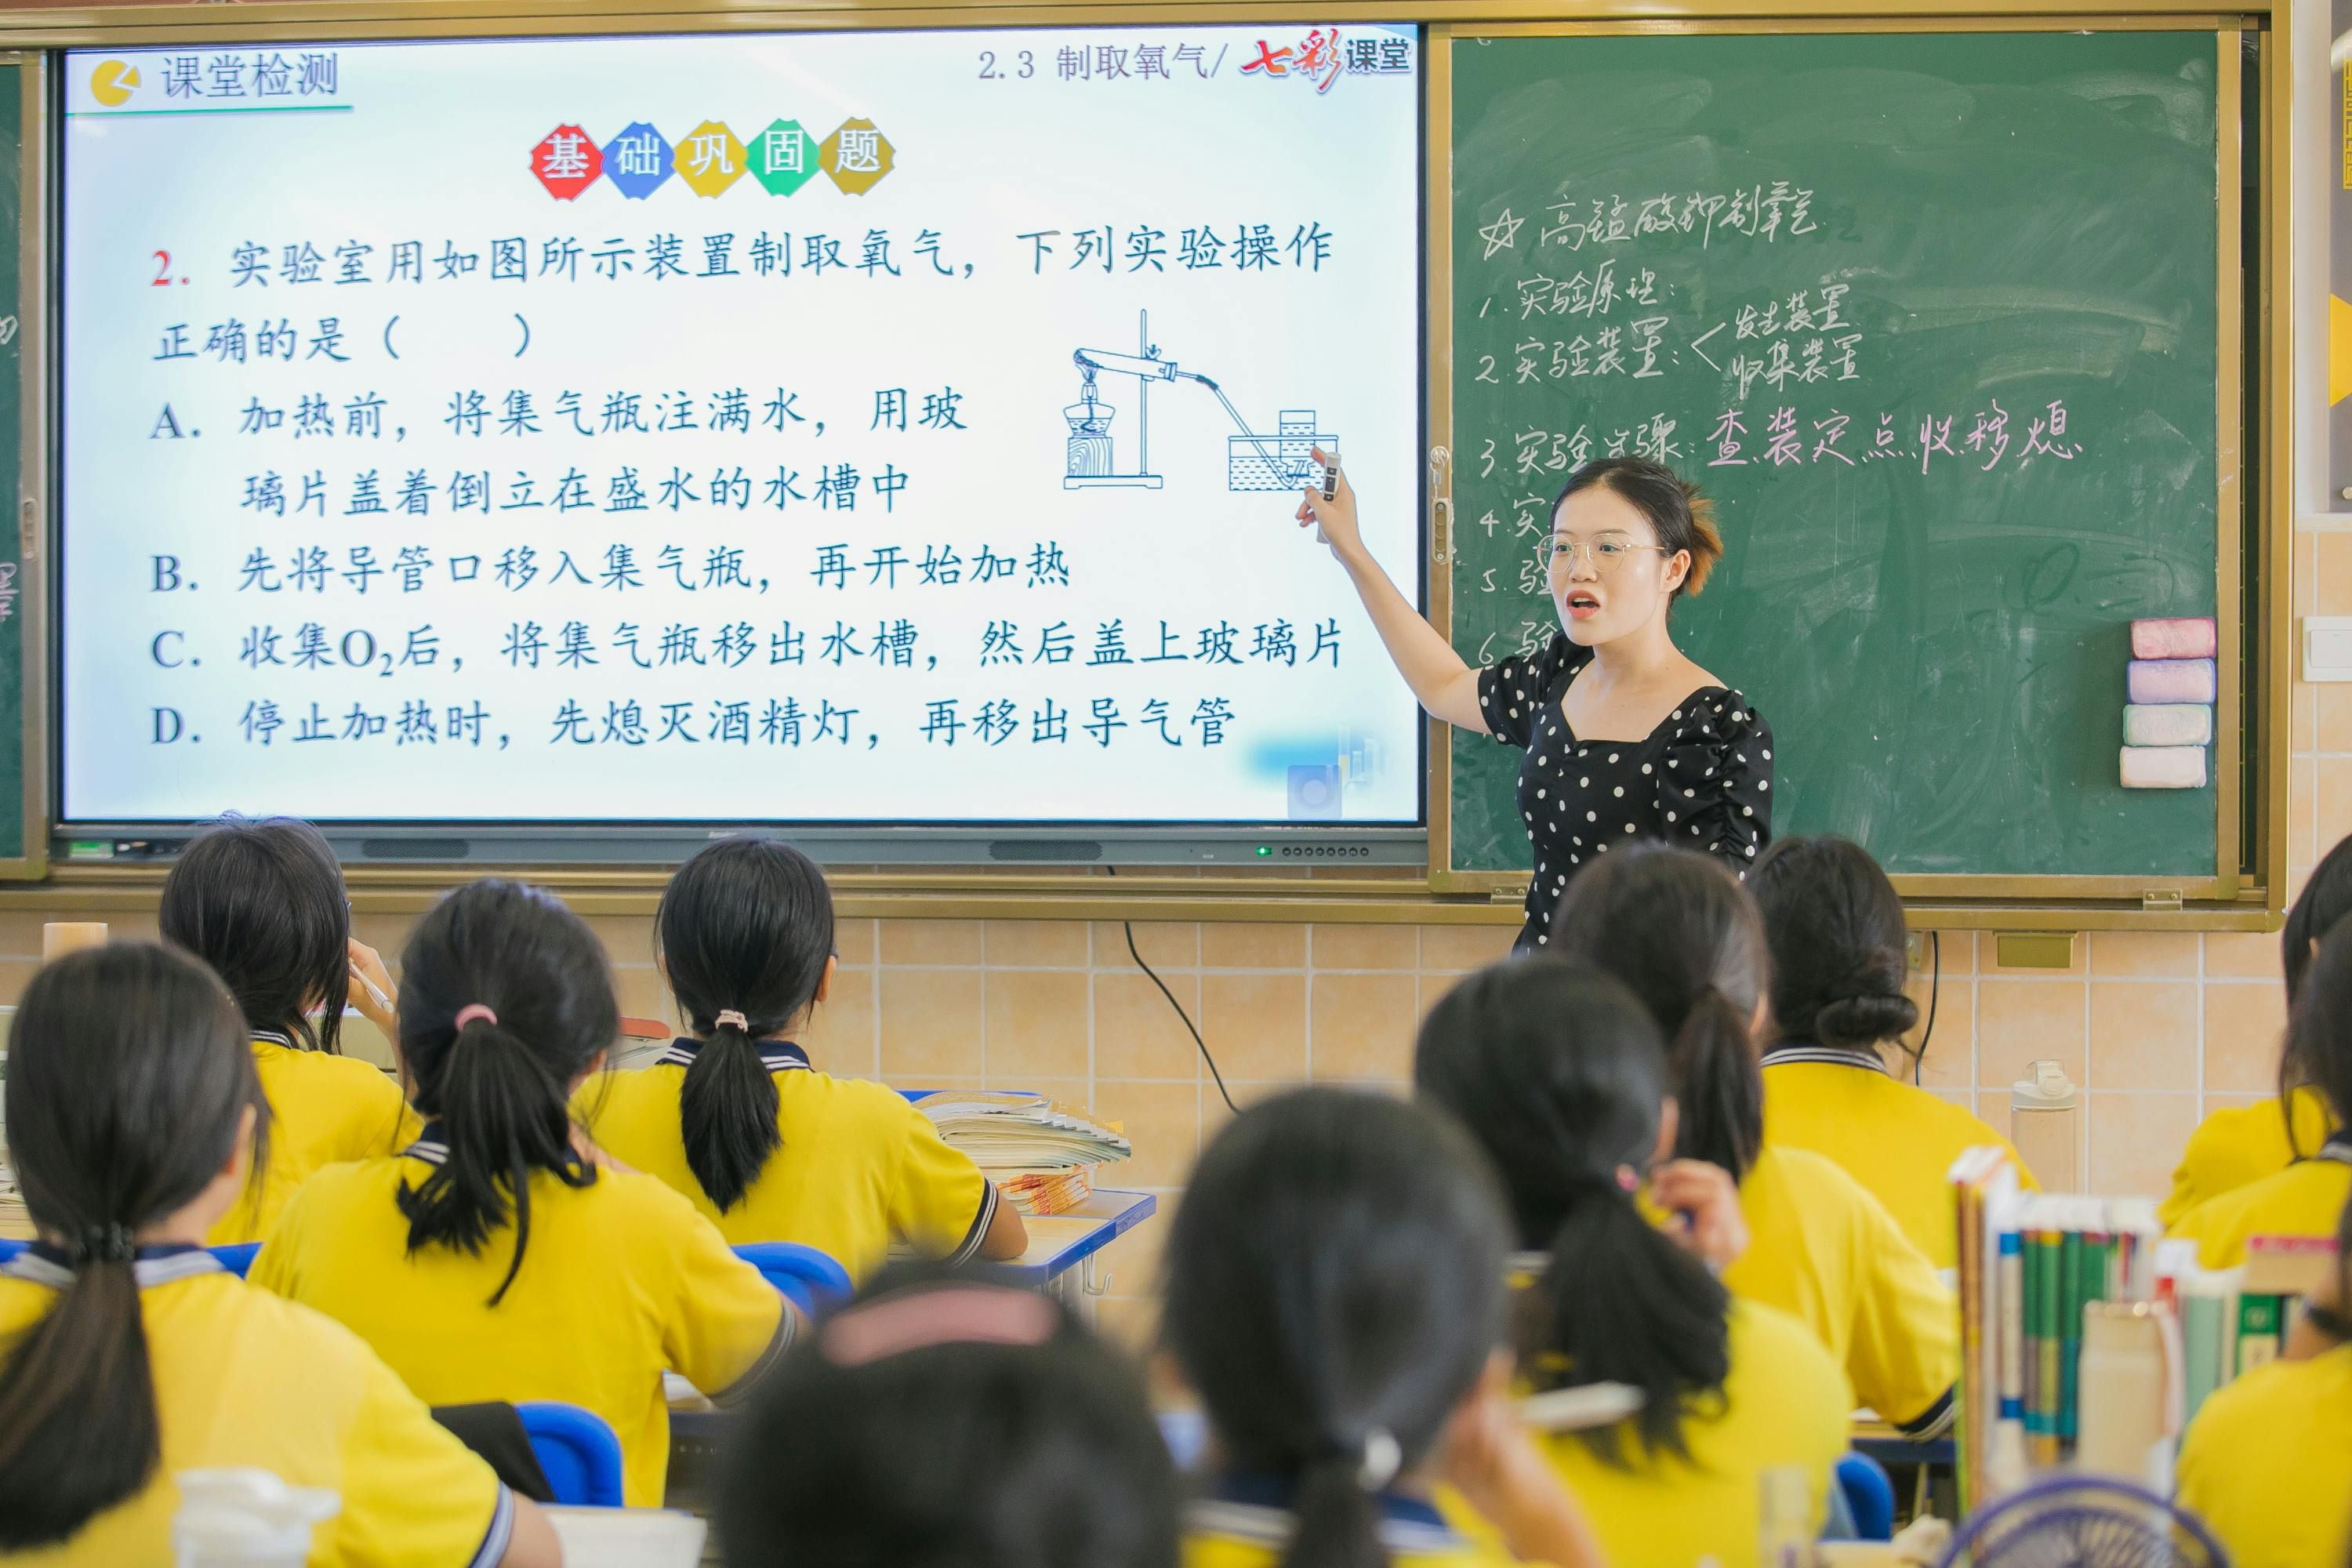 En China, se le da un lugar bastante importante a la educación.